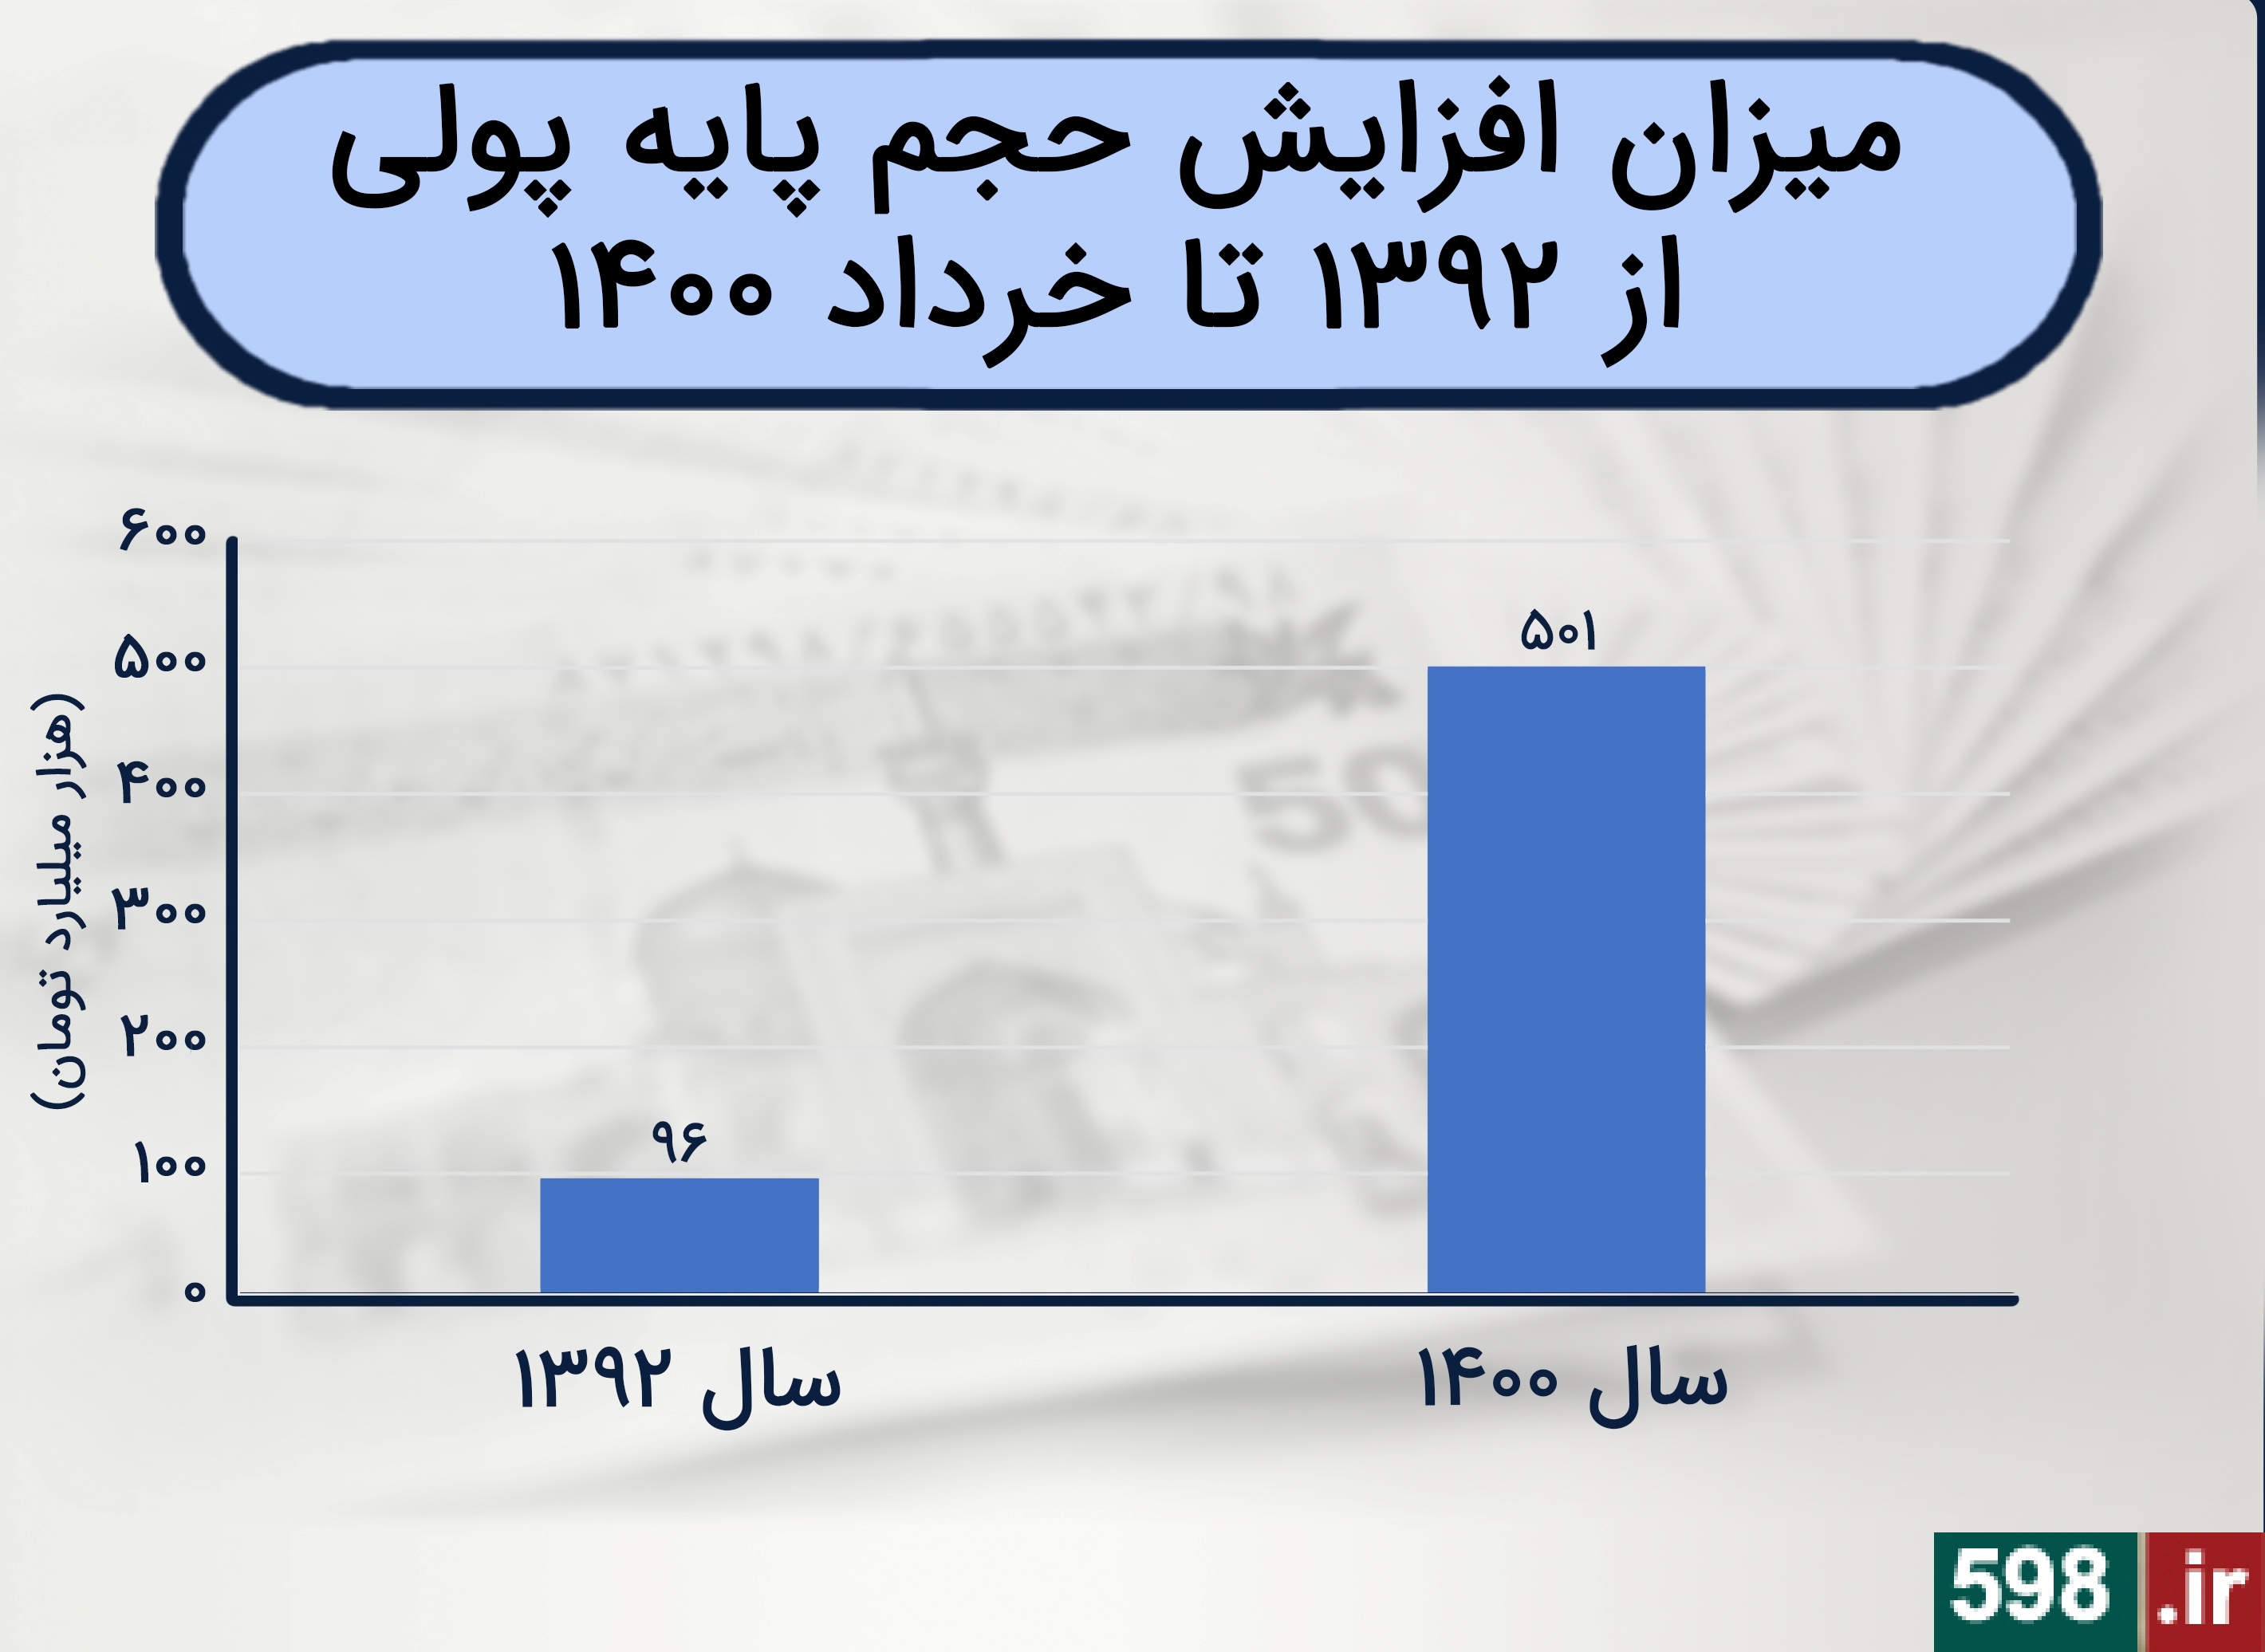 افزایش 522 درصدی چاپ پول در دولت روحانی/ تورم ایران 31 برابر افغانستان شد + نمودار